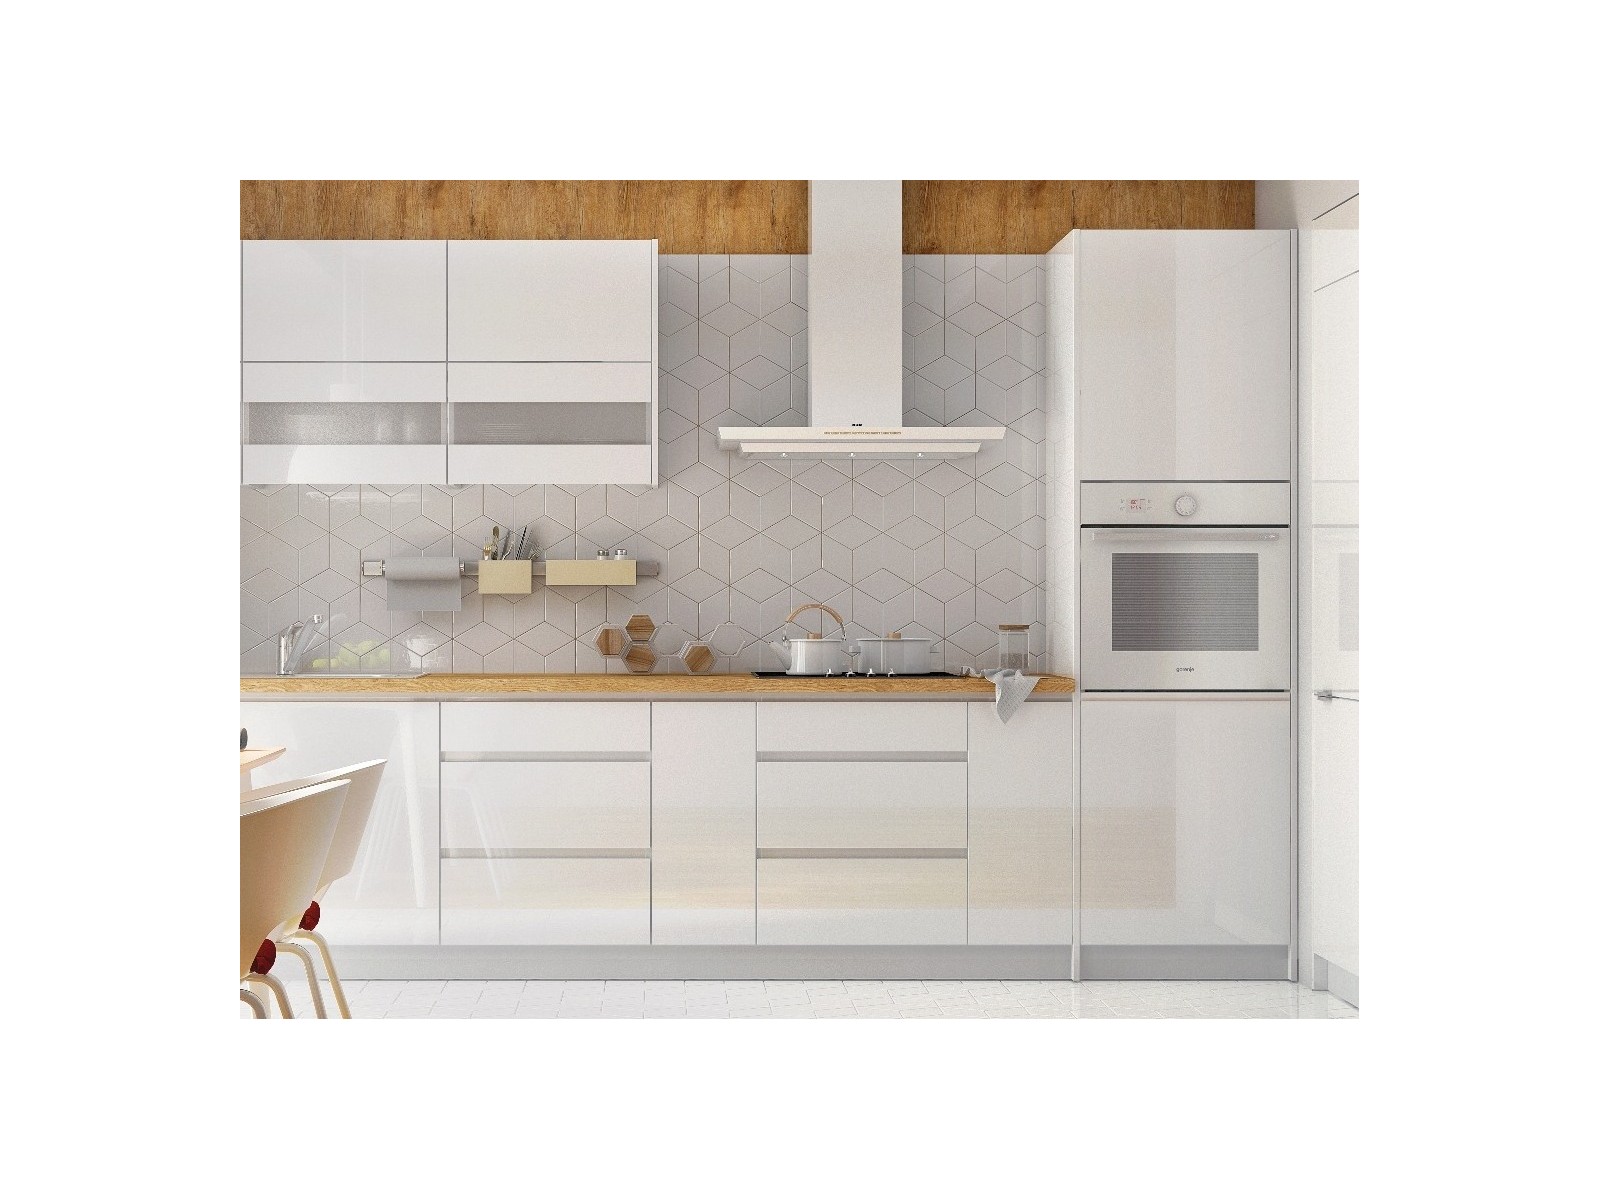 Grifflose Hochglanz Einbauküche Küchenzeile Campari 300 cm, 8-teilig, in Weiß